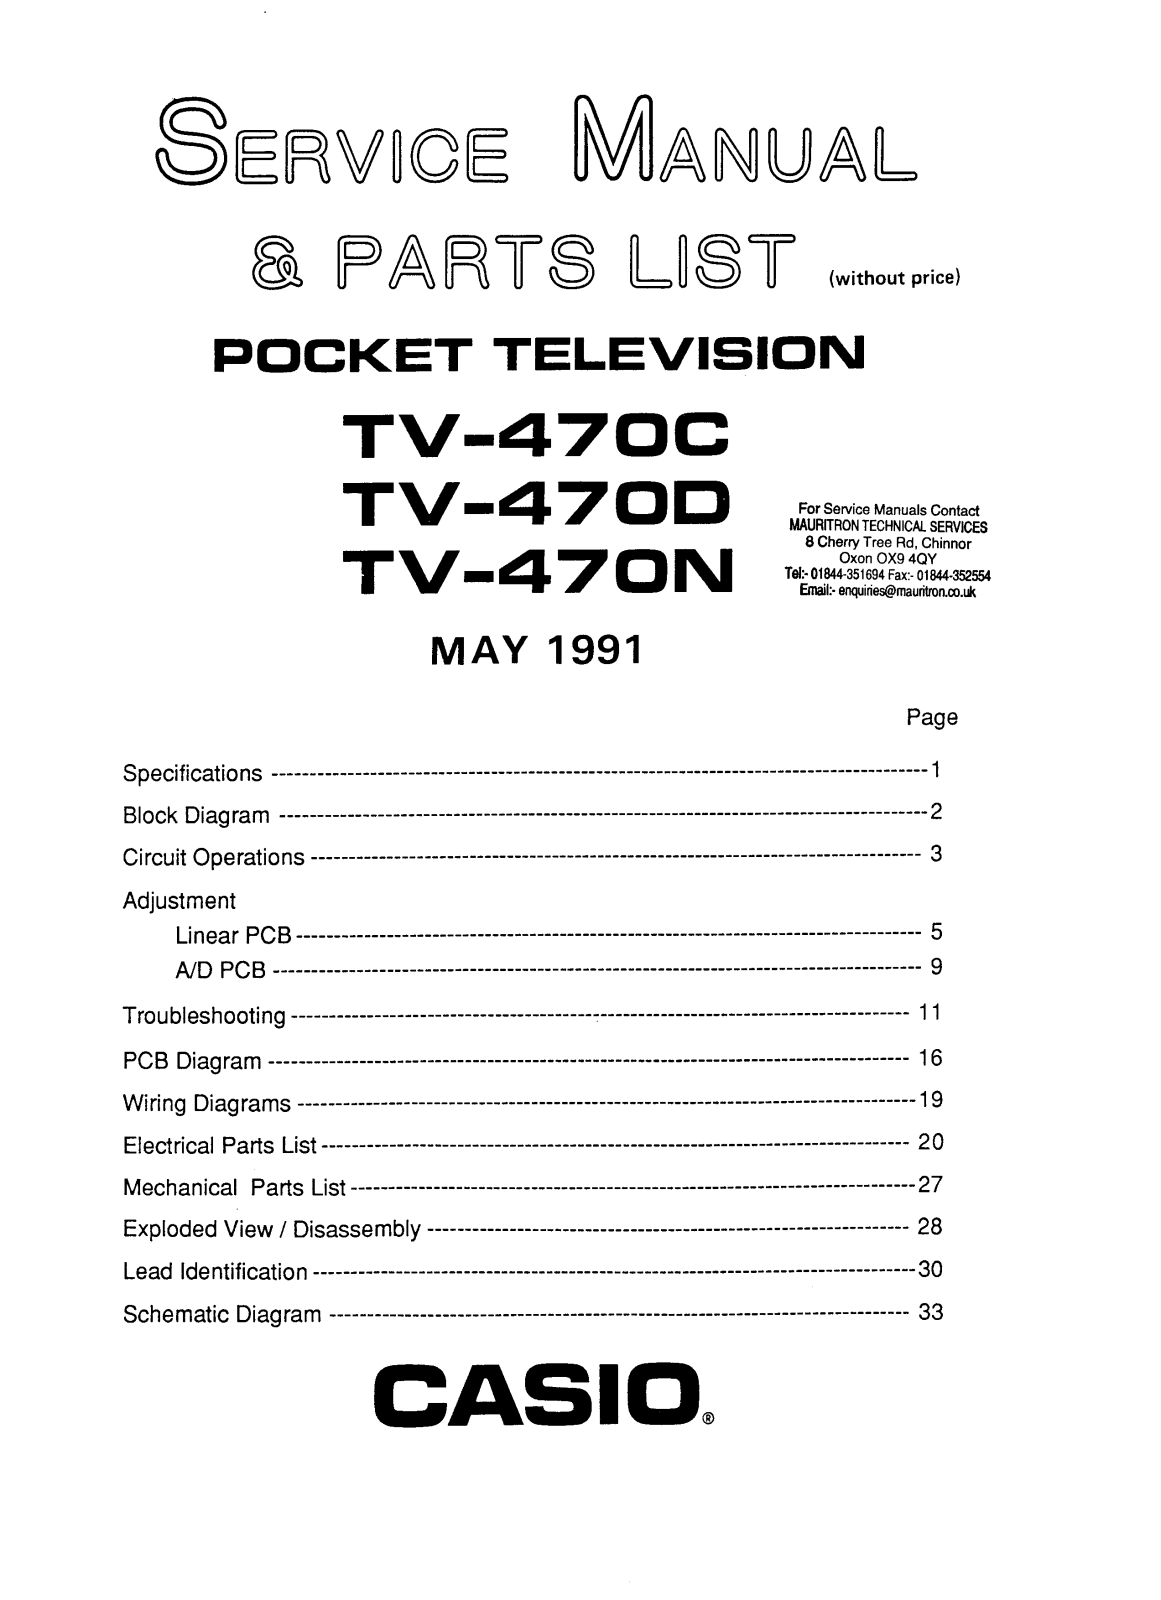 CASIO TV-470C, TV-470D, TV-470N Service Manual